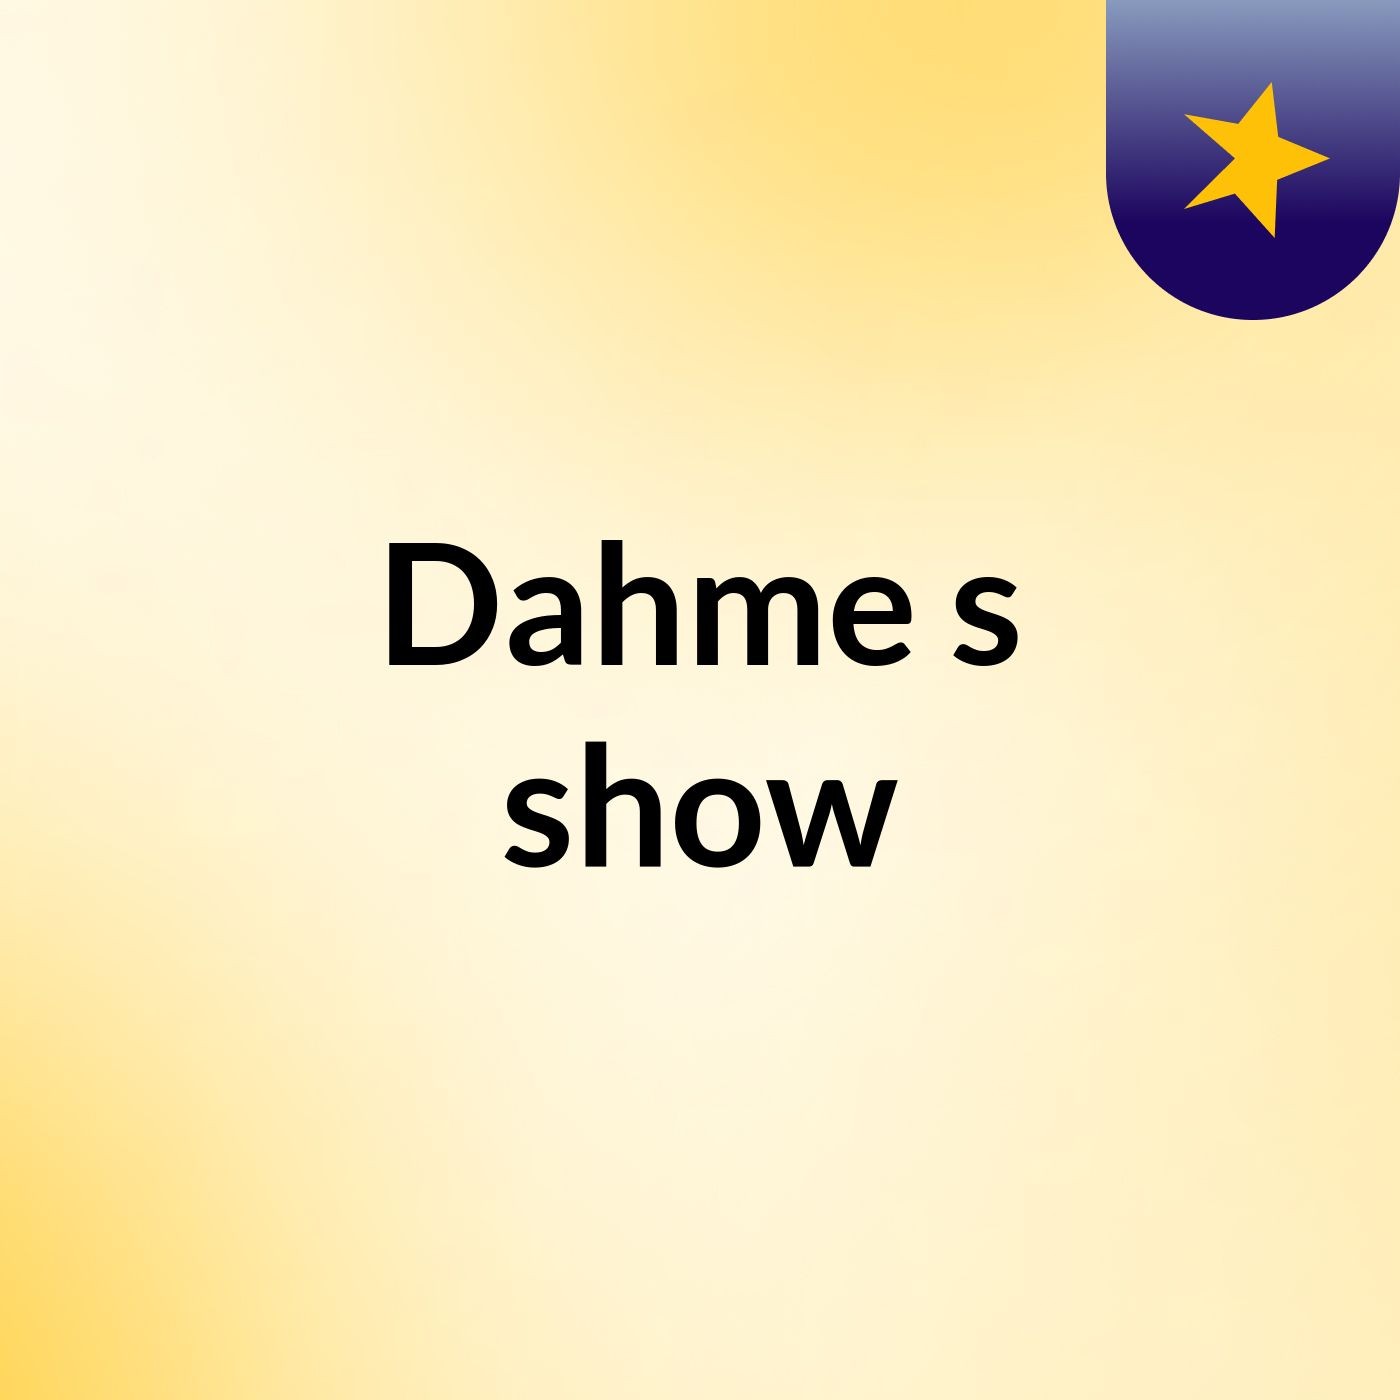 Dahme's show